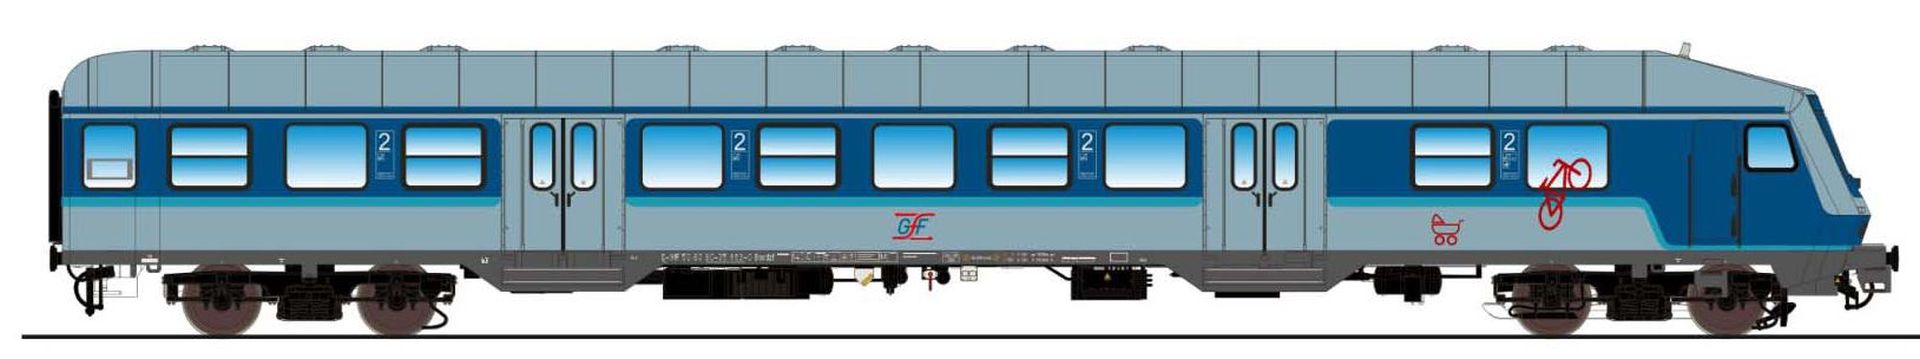 ESU 36070 - Steuerwagen 'Silberling', Bnrdzf 483.1, 80 80-35 163-0, GfF, Ep.VI